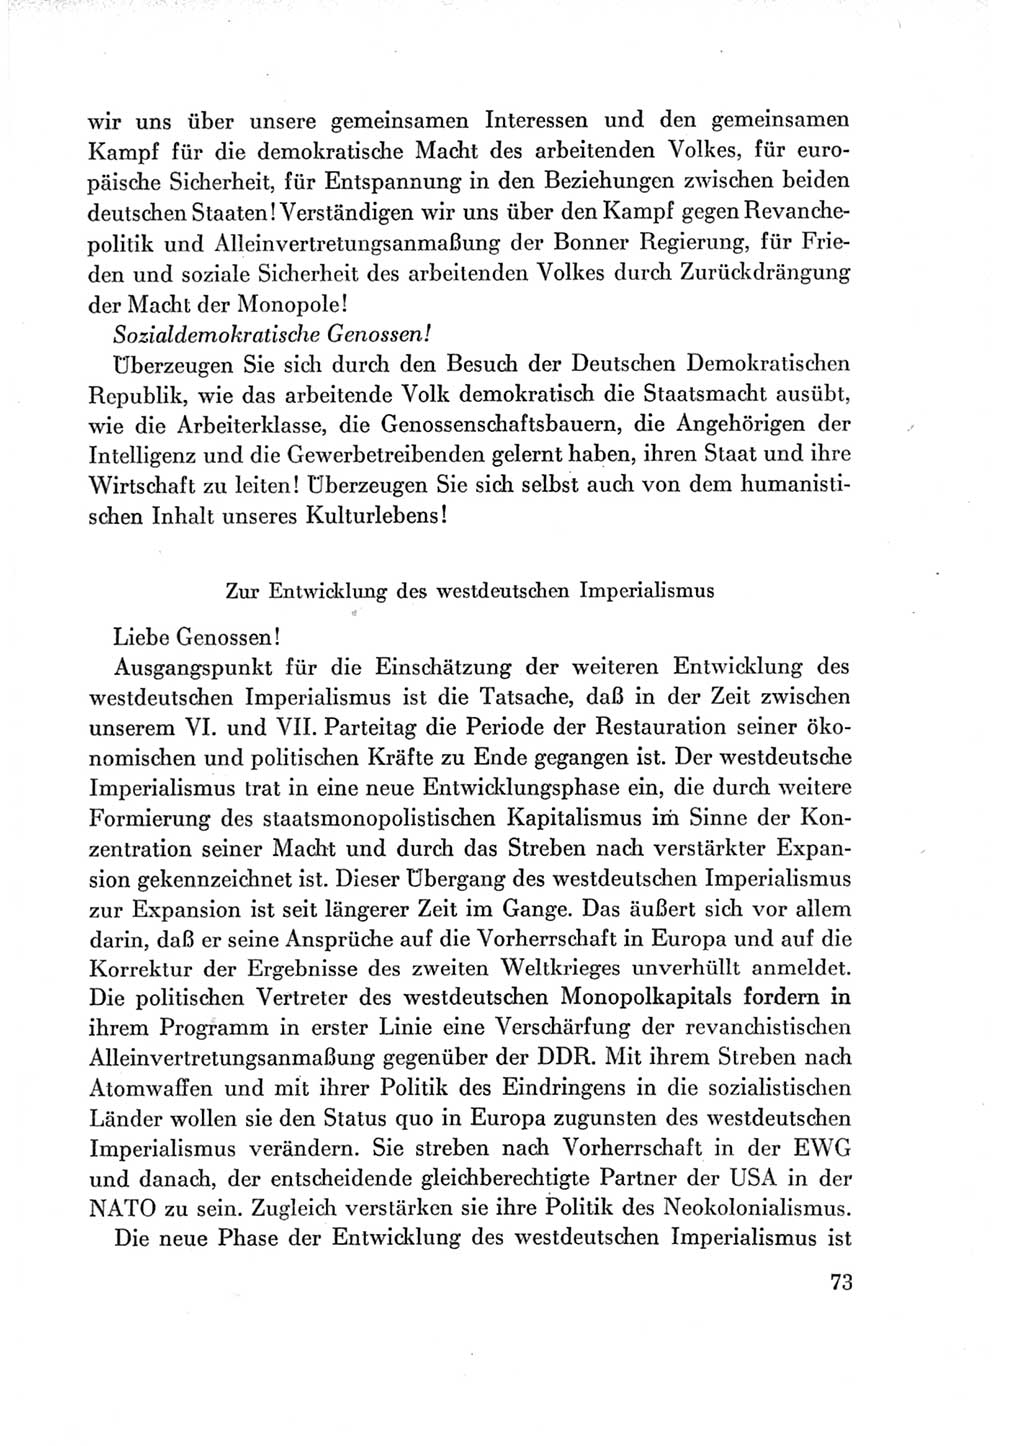 Protokoll der Verhandlungen des Ⅶ. Parteitages der Sozialistischen Einheitspartei Deutschlands (SED) [Deutsche Demokratische Republik (DDR)] 1967, Band Ⅰ, Seite 73 (Prot. Verh. Ⅶ. PT SED DDR 1967, Bd. Ⅰ, S. 73)